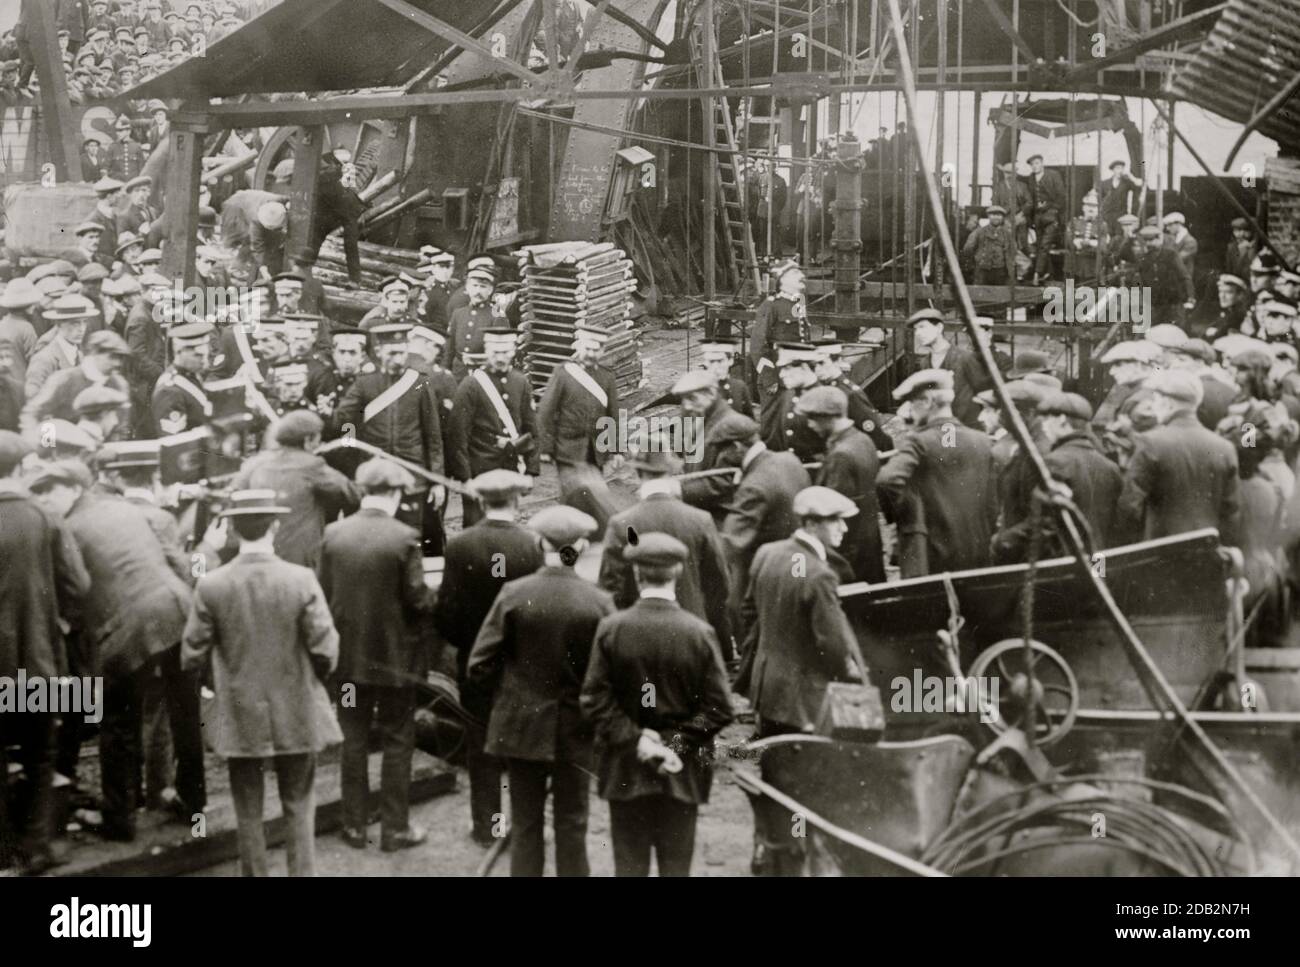 Sengenydd Colliery Disaster, Sengenydd, Wales. Am 14. Oktober 1913 starben bei einer Explosion oder in den beschädigten Schächten 439 Männer. Stockfoto